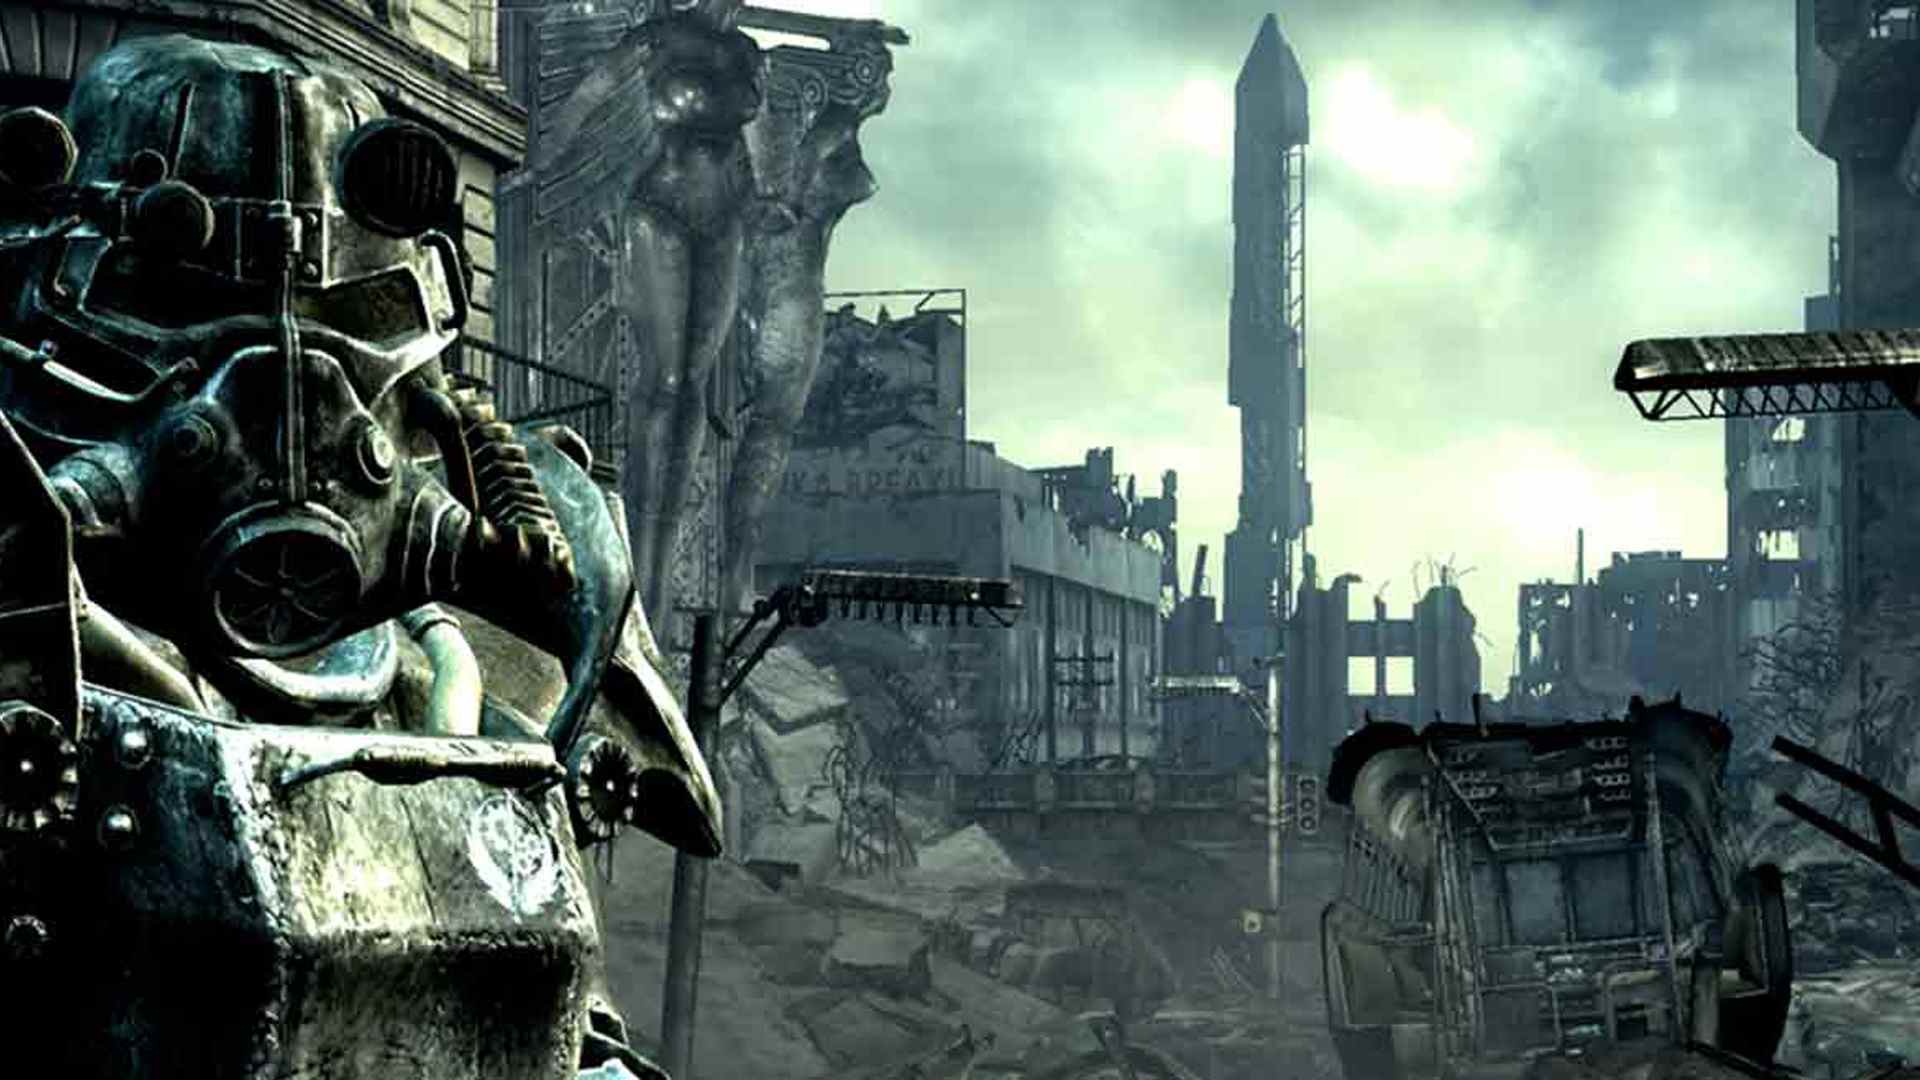 Armure assistée et ville en ruine dans Fallout 3